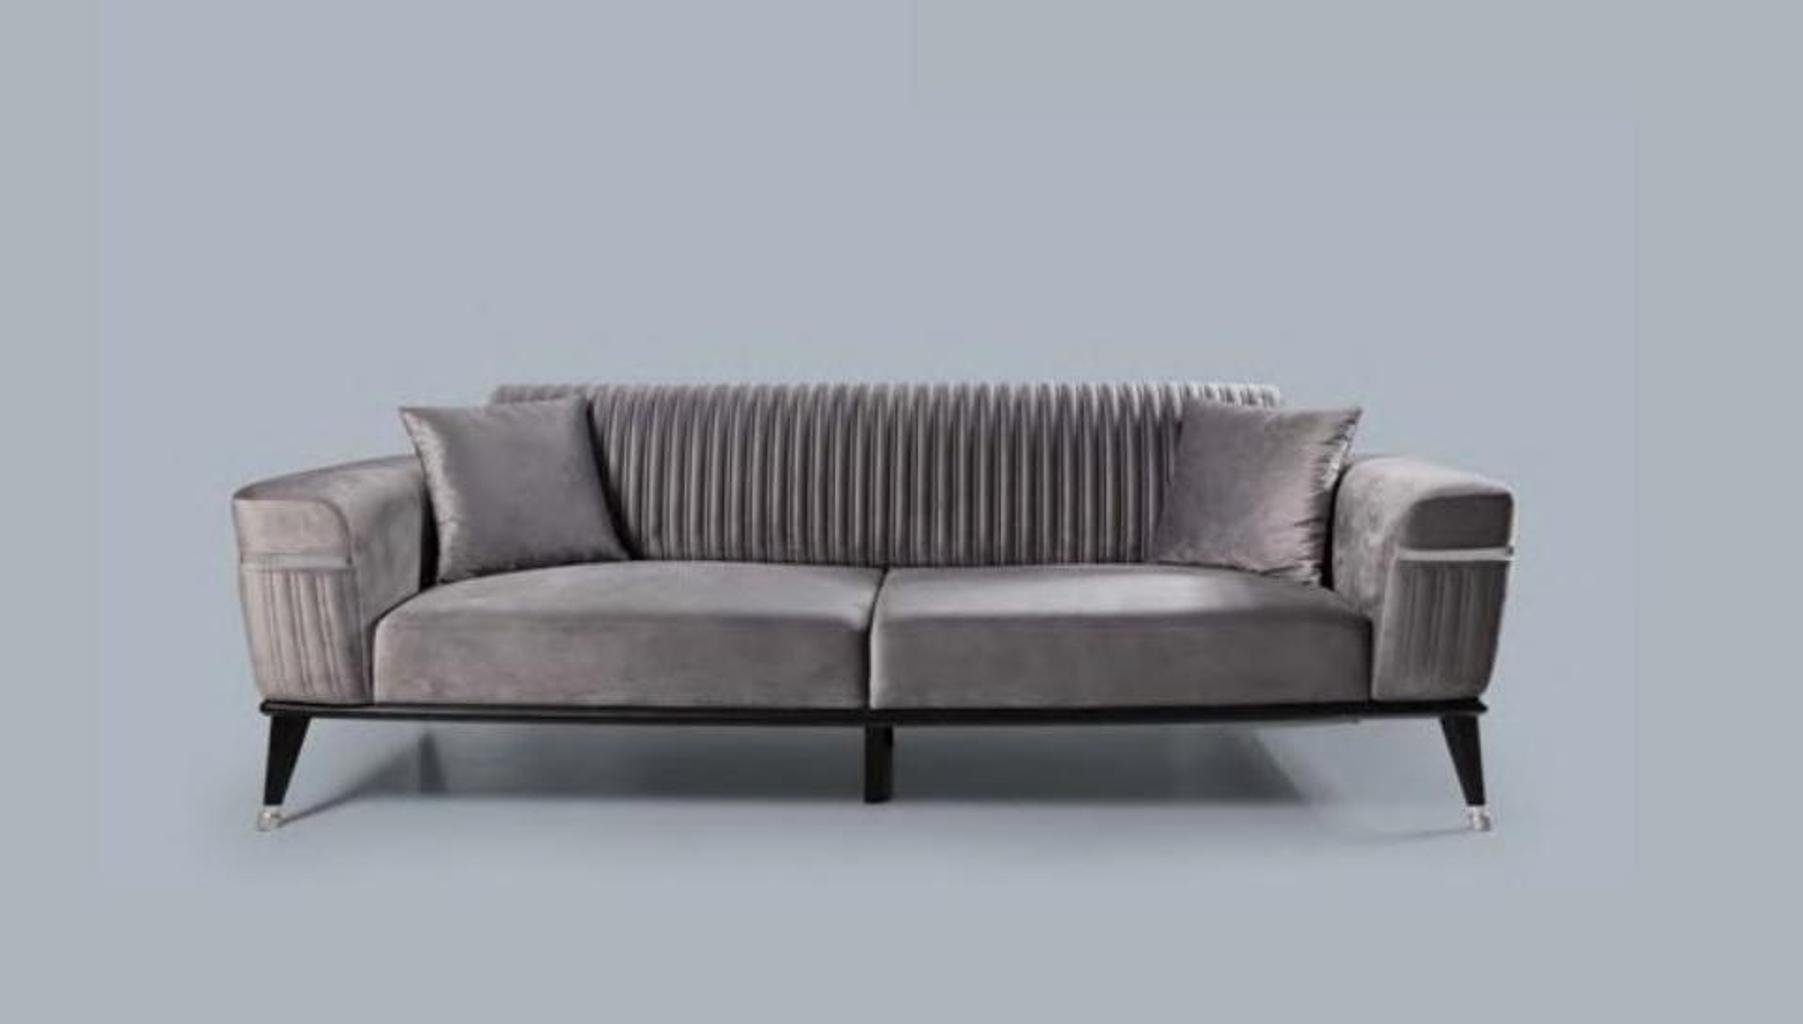 JVmoebel Sofa Luxus Wohnzimmer Couch Graue Couchen Sofa Möbel Grau, Made in Europe